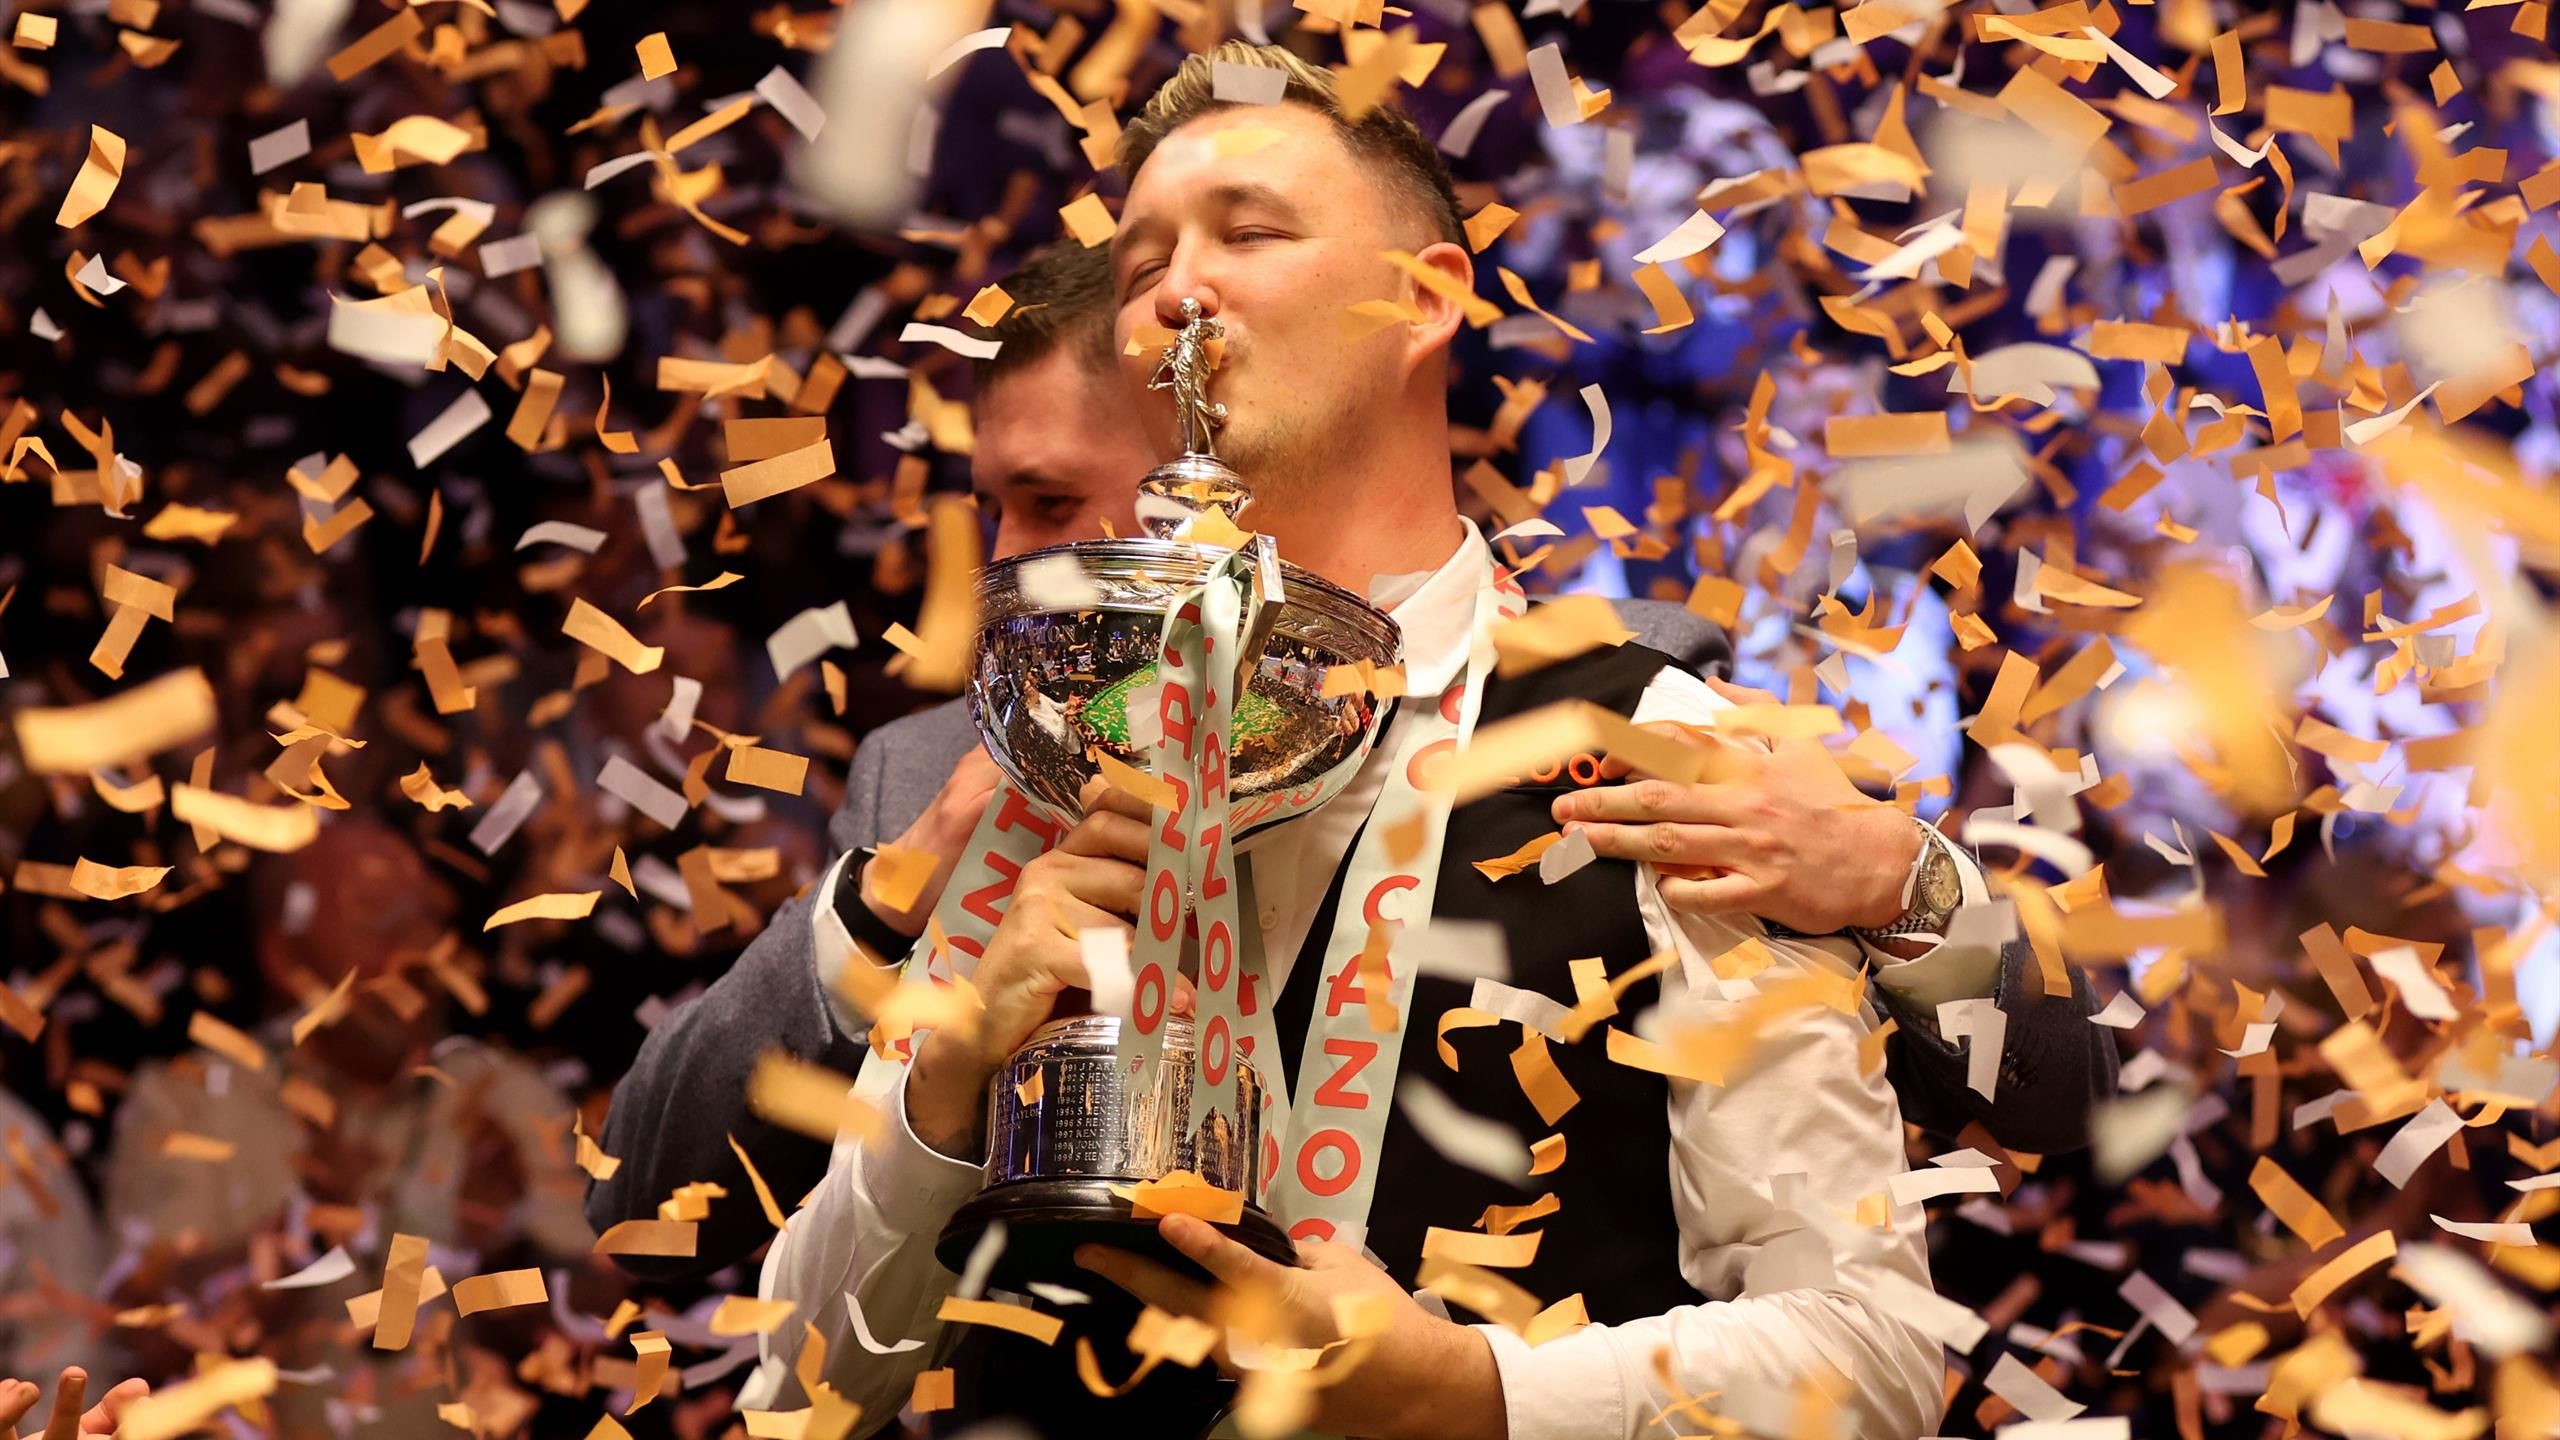 Mundial de Snooker: Kyren Wilson se corona campeón del mundo por primera vez en la final ante Jack Jones – “El Guerrero” en la portería de sus sueños